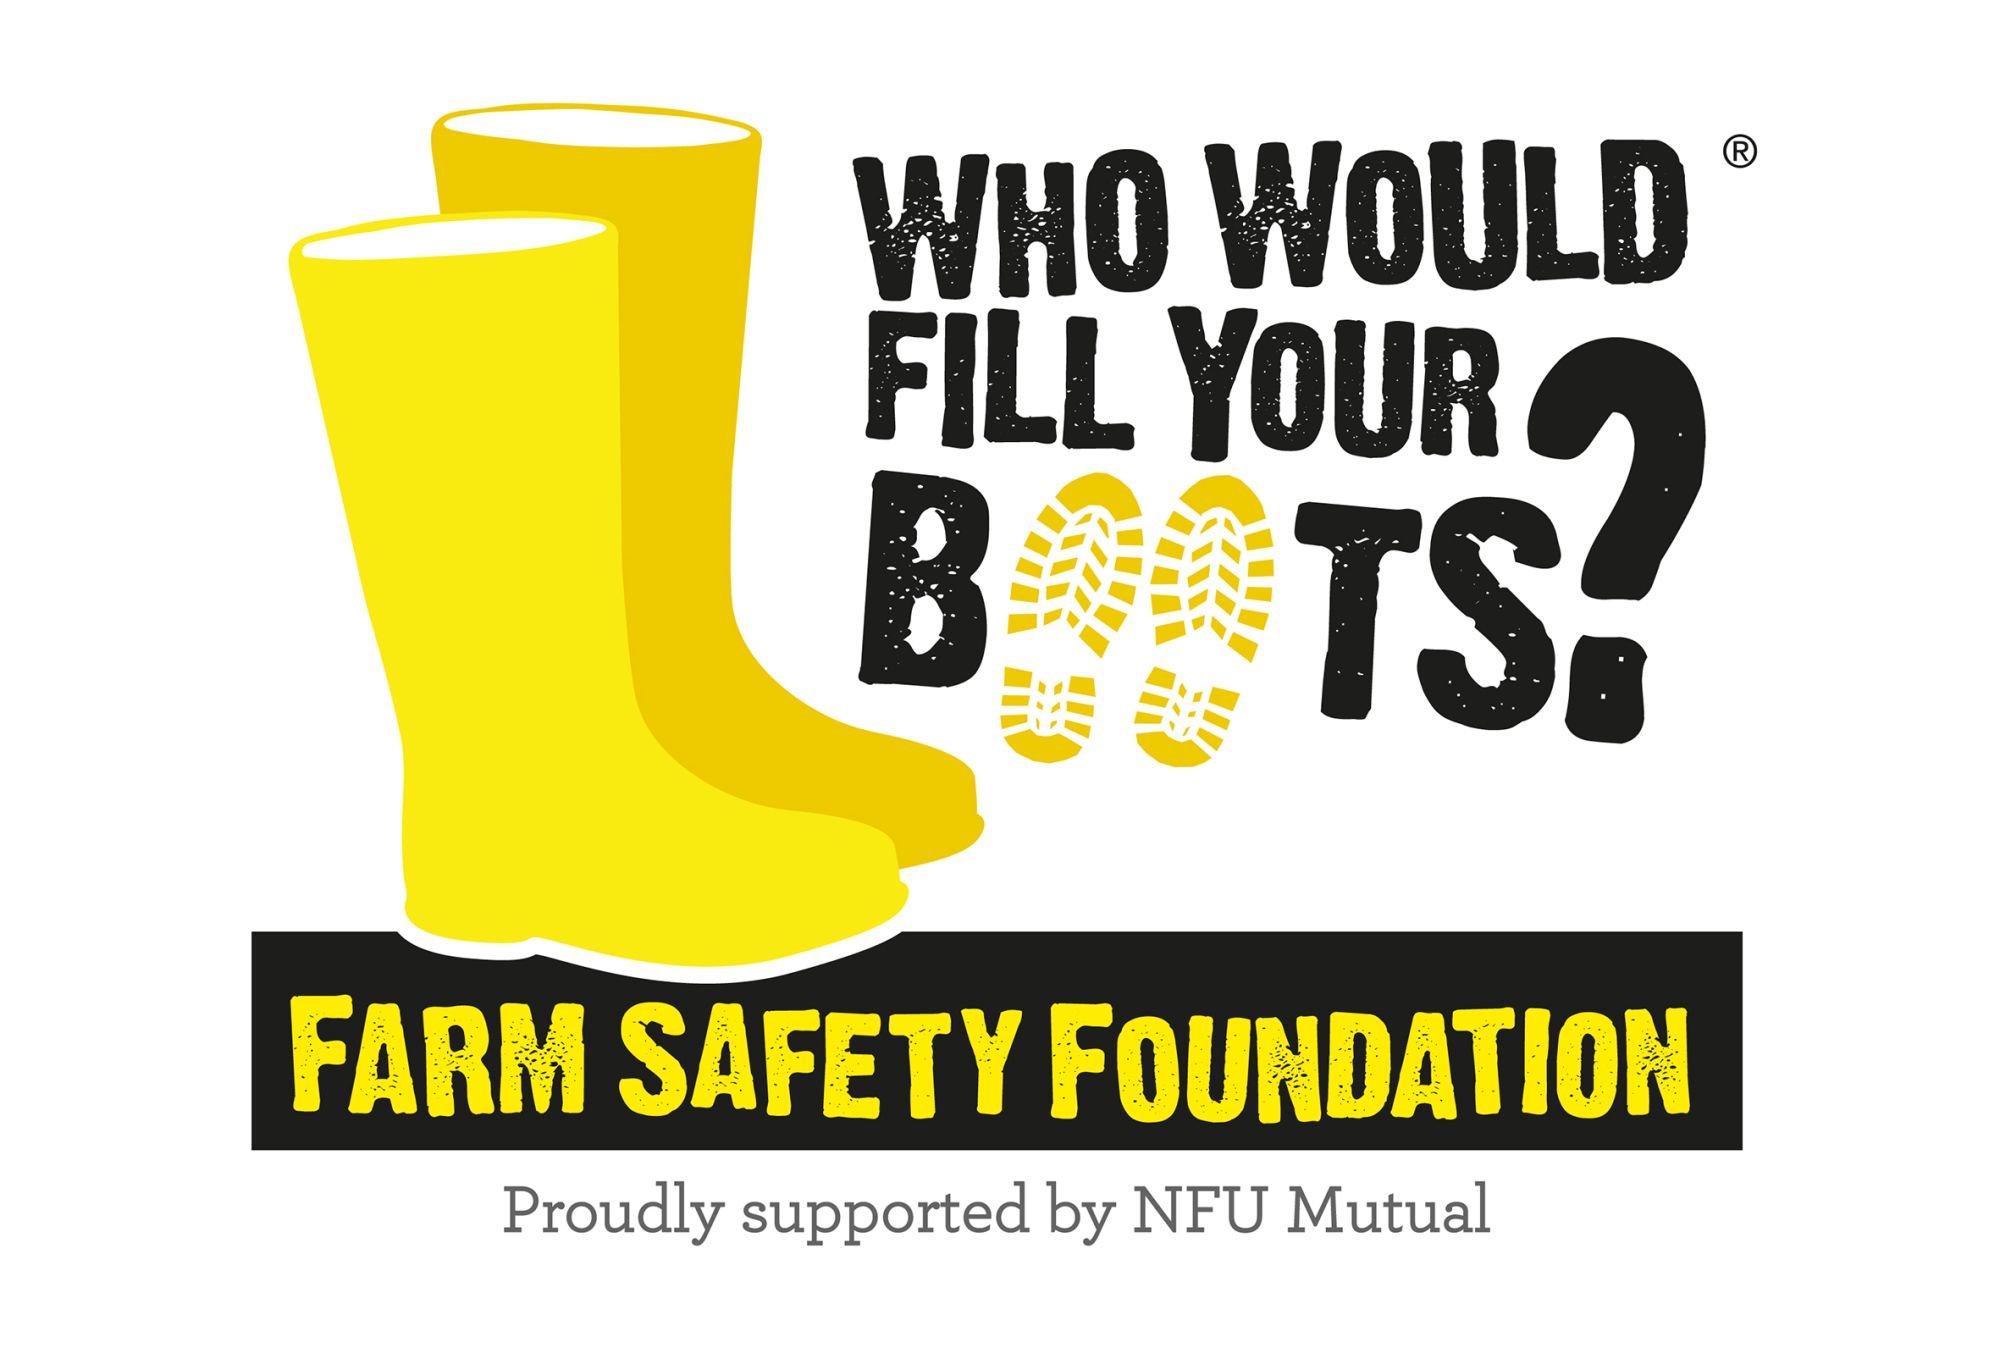 Farm Safety Foundation